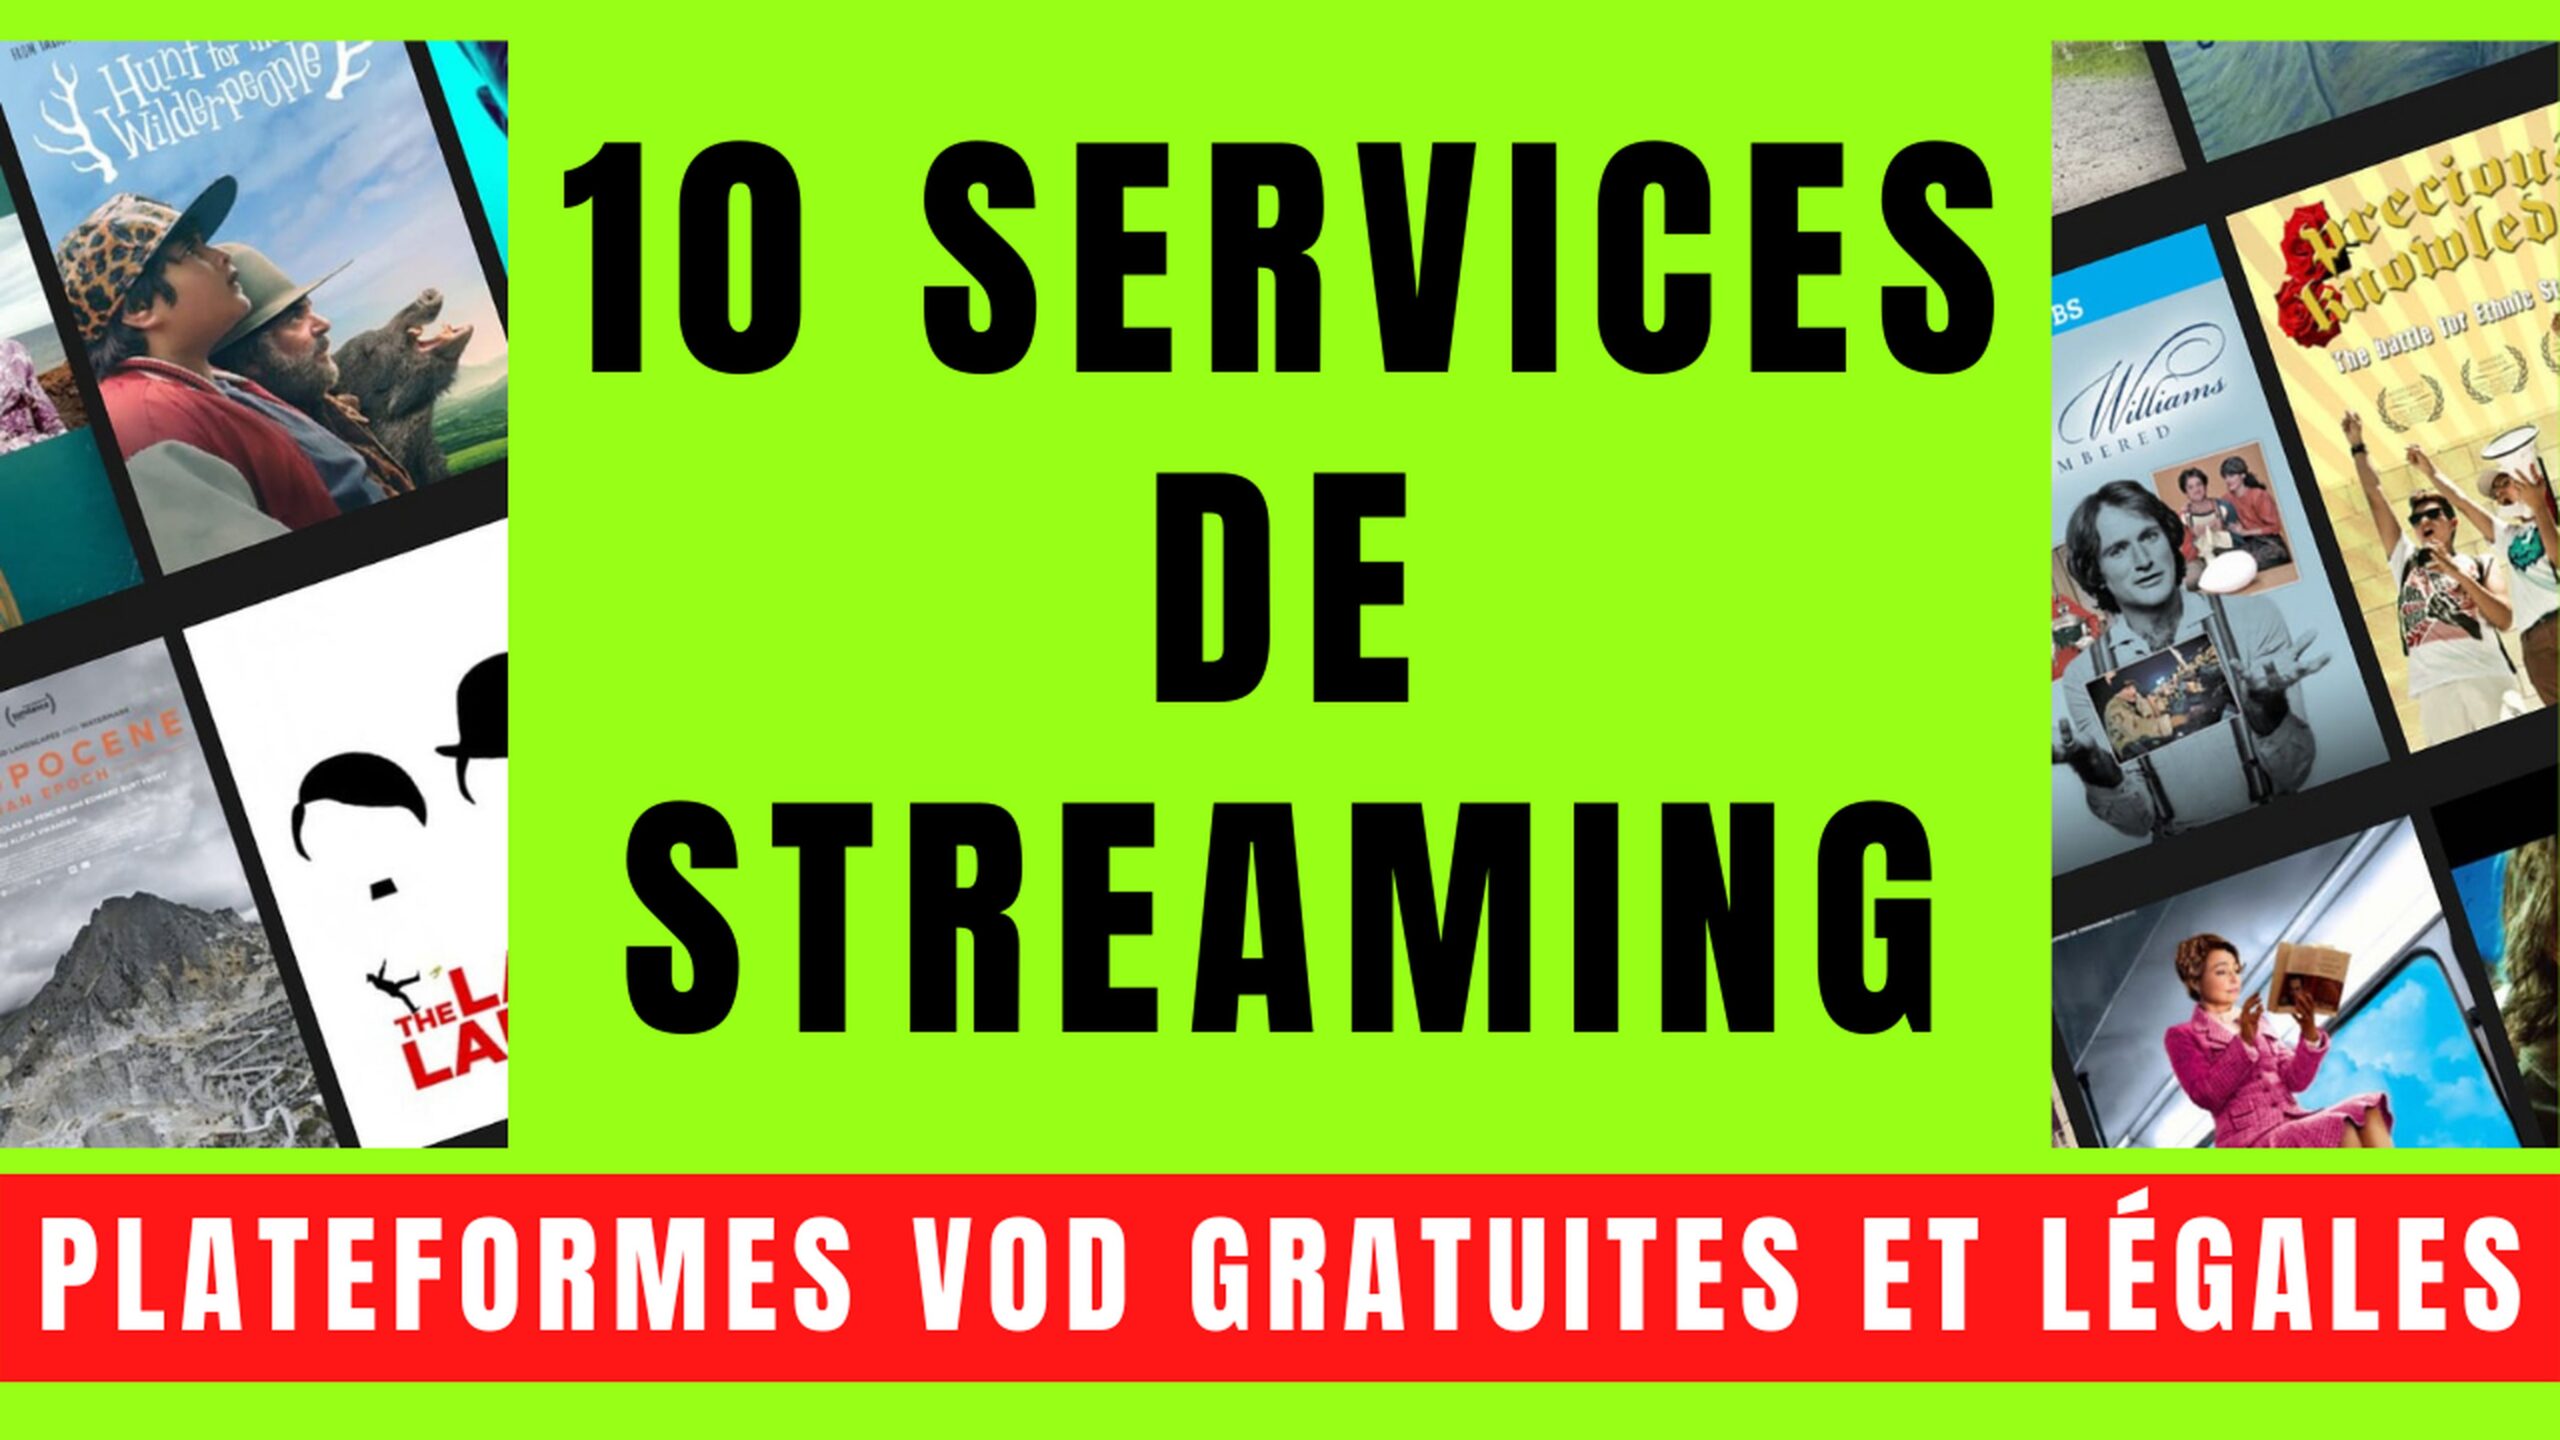 10 SERVICES VOD avec STREAMING GRATUIT et LÉGAL 21